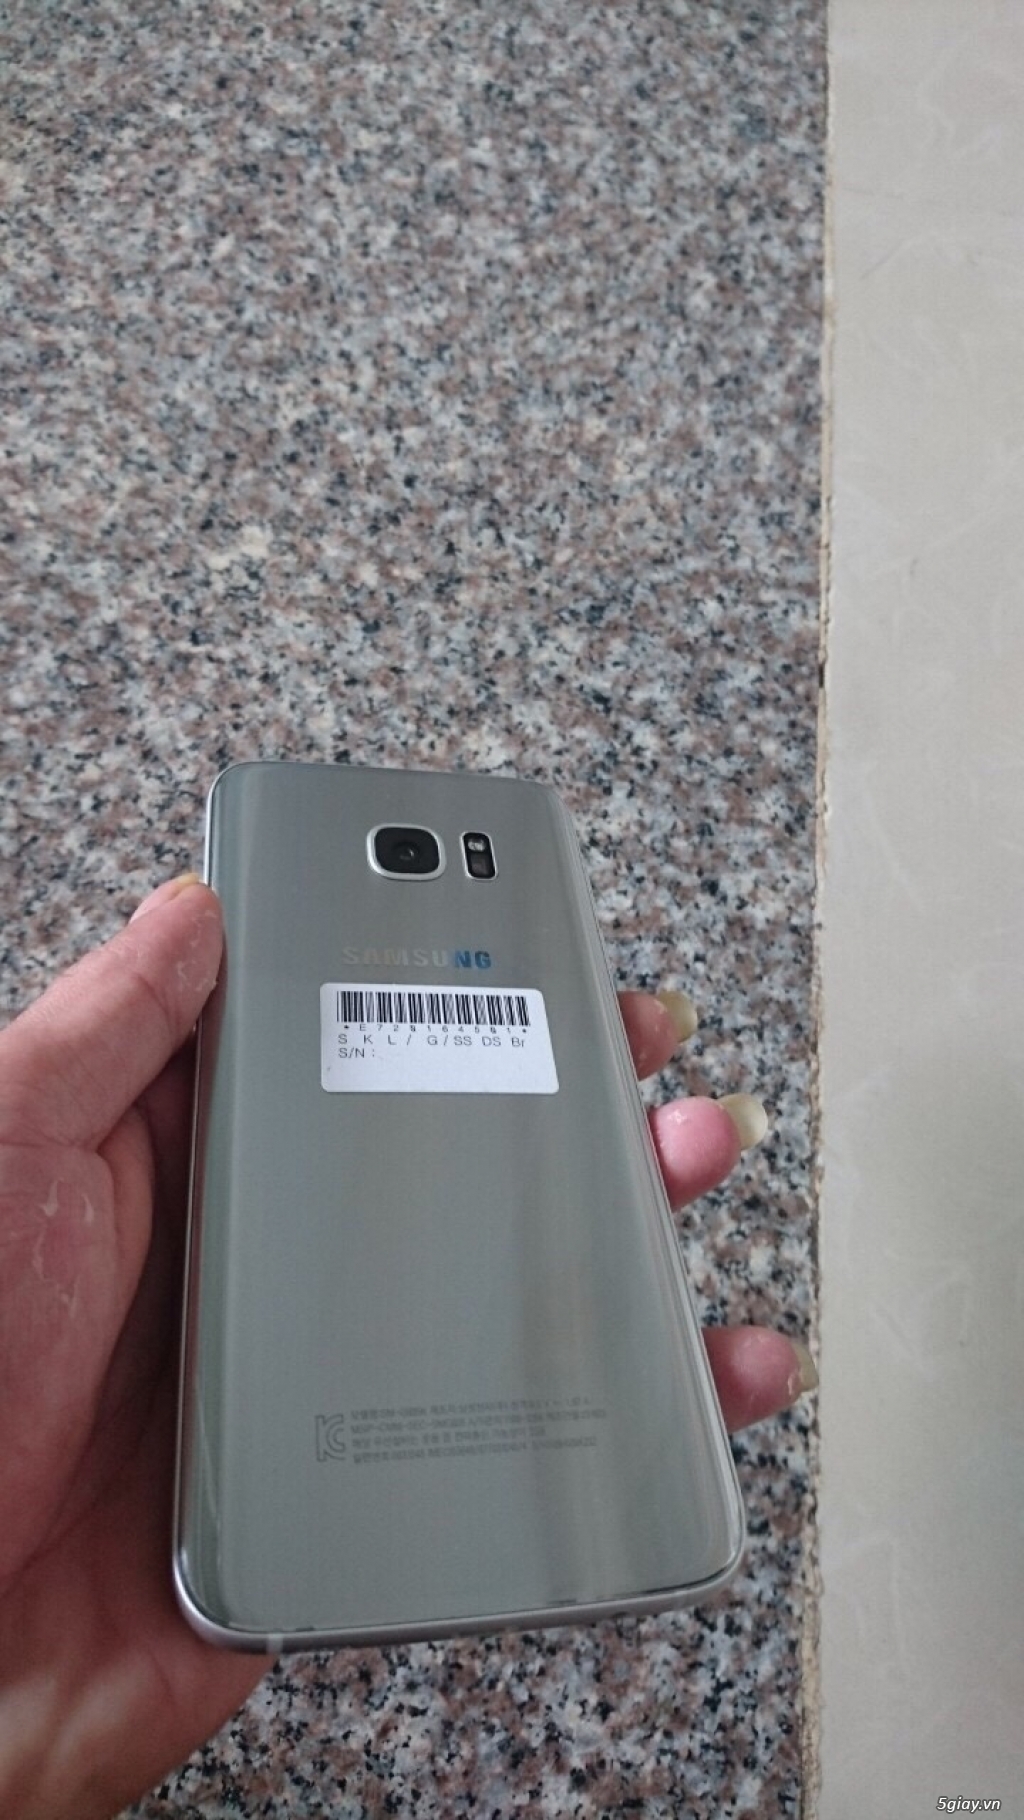 Samsung Galaxy S7 Edge Hàn quốc xách tay 99% nguyên zin - 3